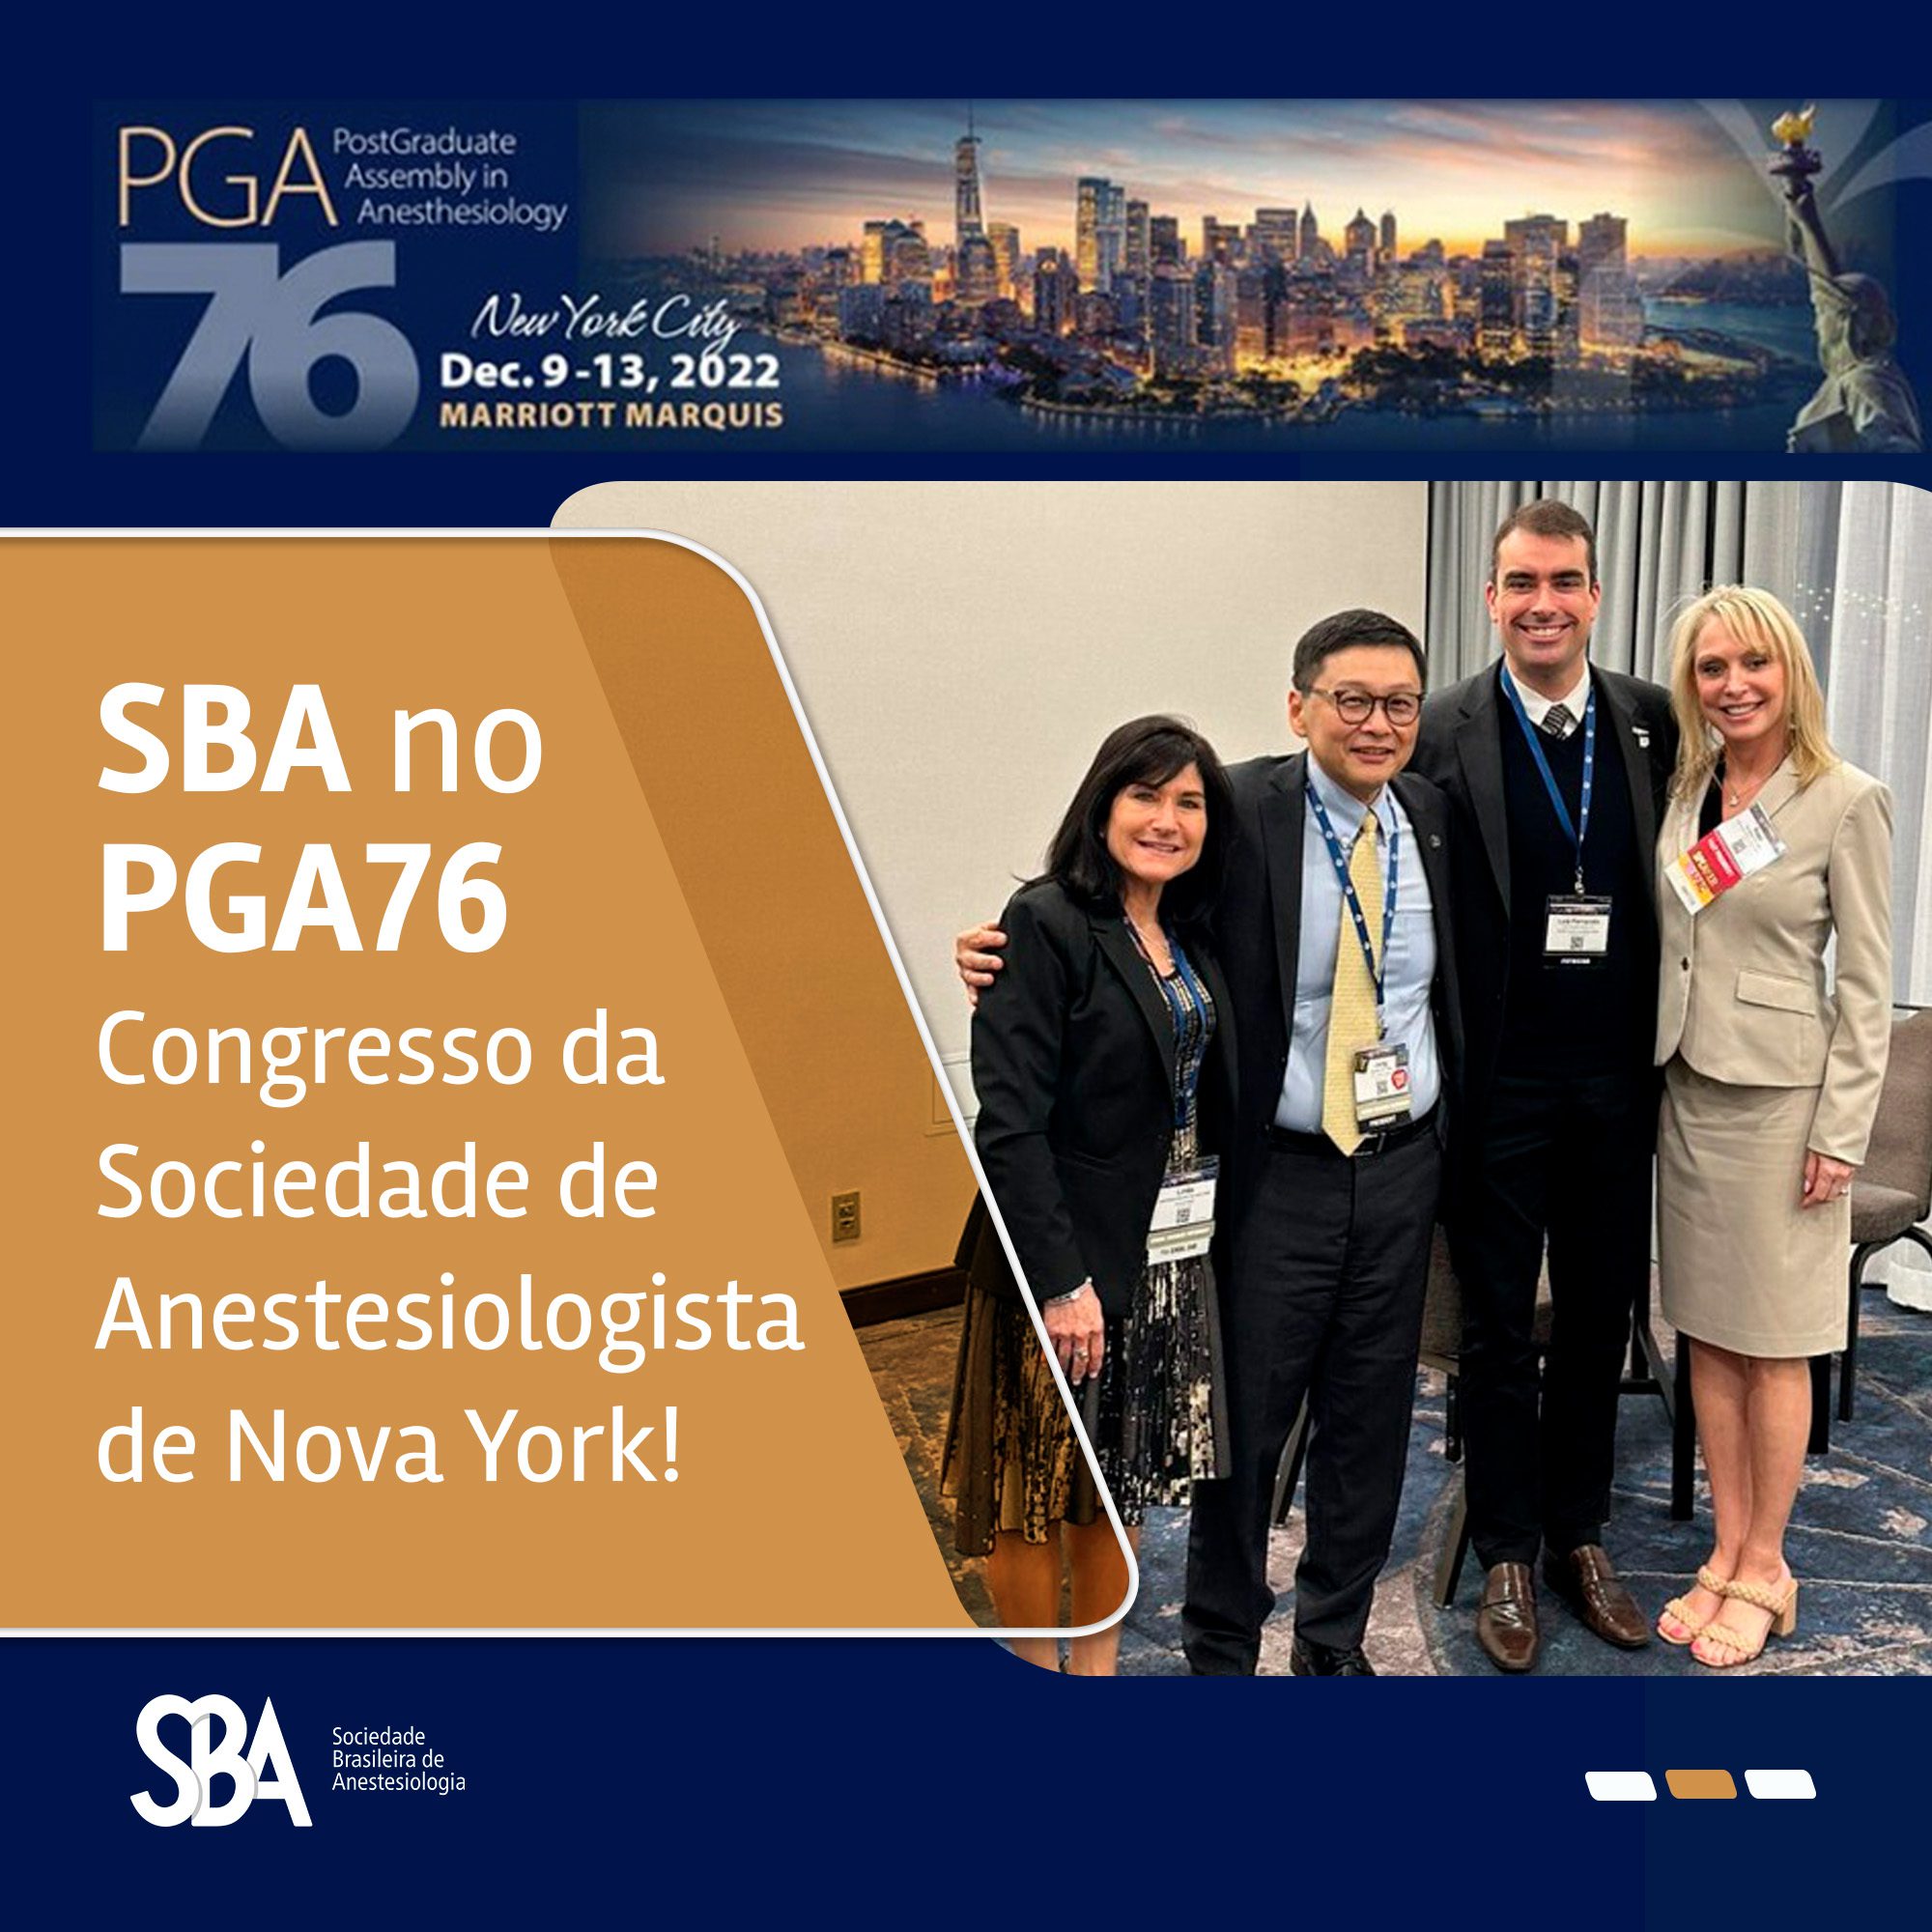 SBA participa do PGA76 – Congresso da Sociedade de Anestesiologista de Nova York